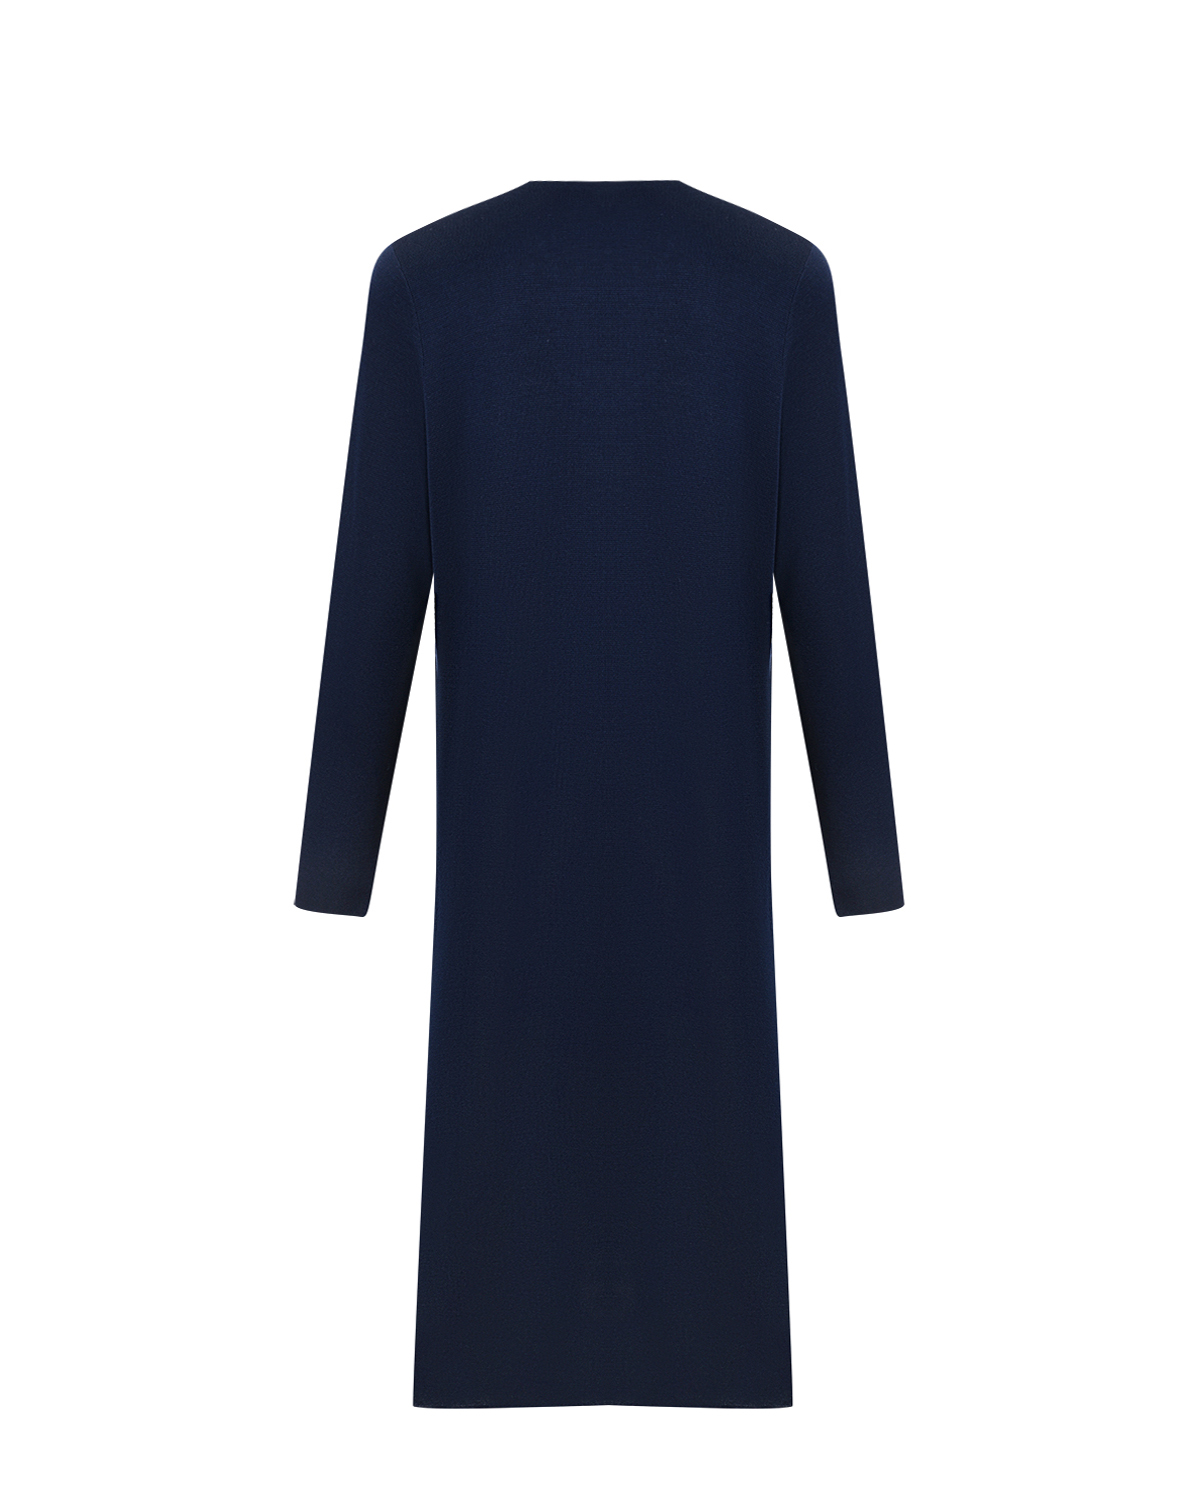 Синее платье из шерсти мериноса Allude, размер 38, цвет синий - фото 5